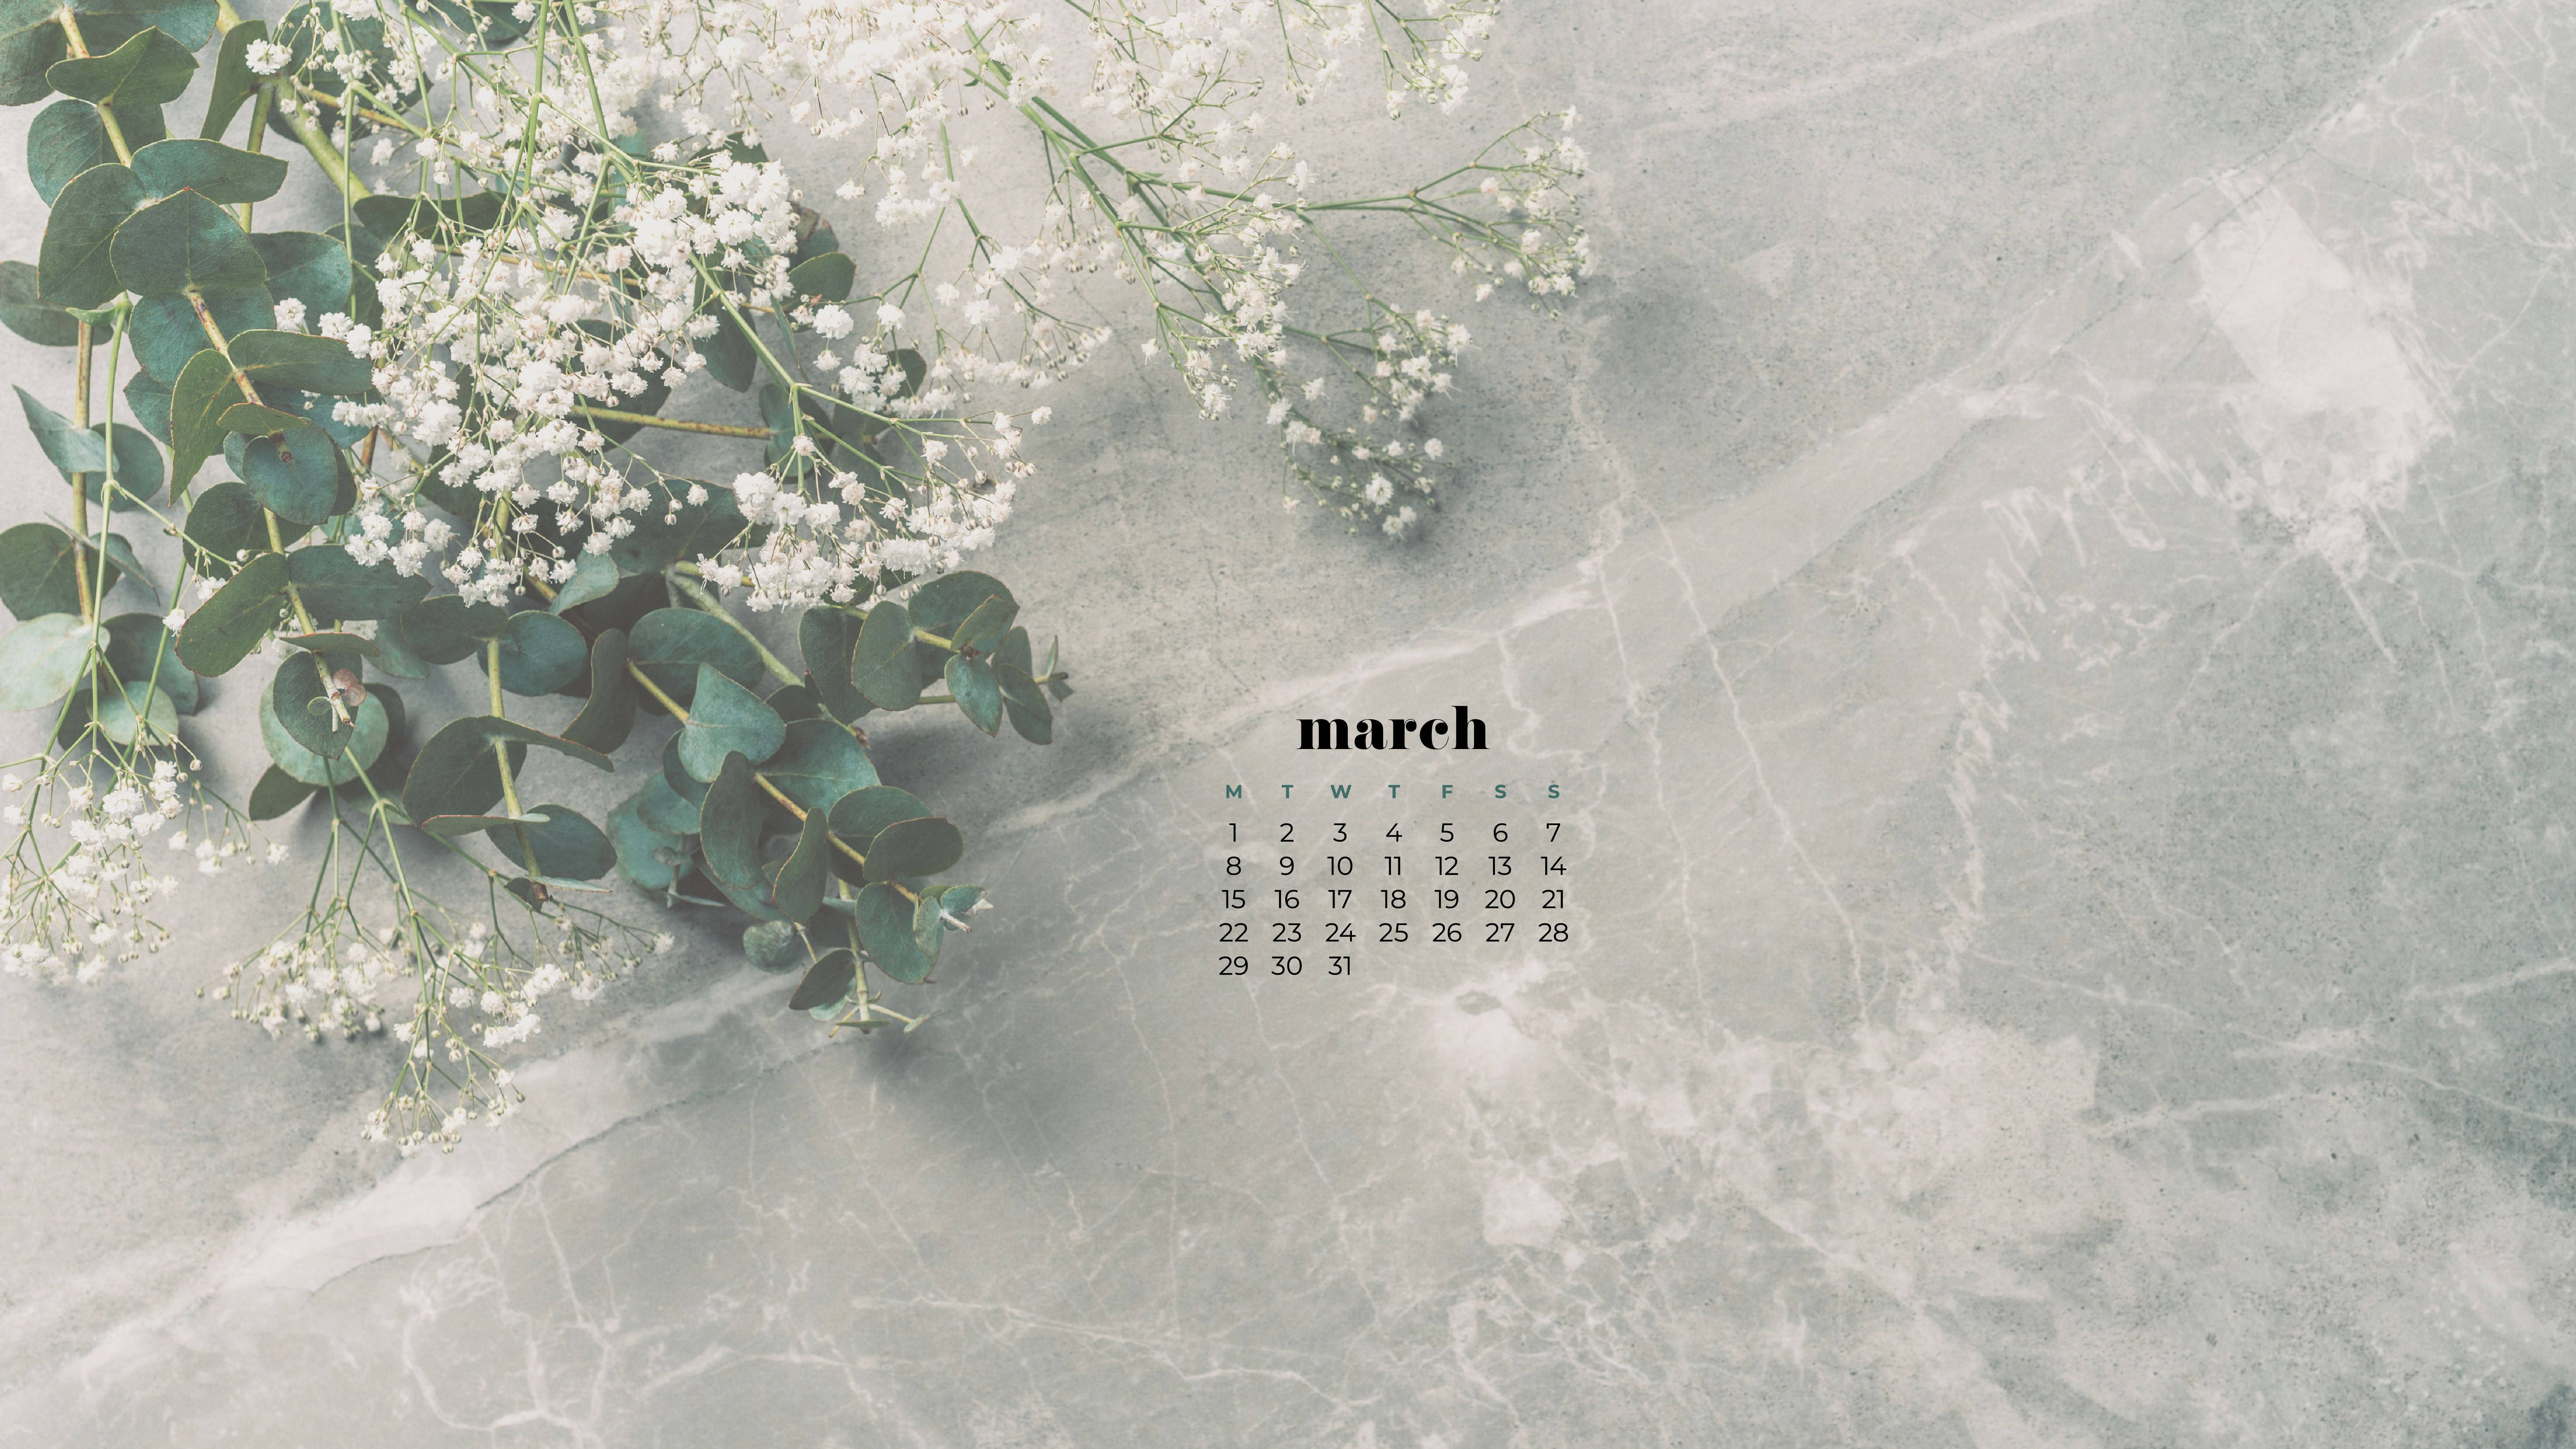 Đón mùa xuân đầy màu sắc với hình nền Tháng 3 đẹp lung linh. Nền trắng và hoa lá tươi tắn sẽ giúp bạn thư giãn mỗi khi mở máy tính. Hãy xem ngay để bắt đầu một ngày mới đầy năng lượng.